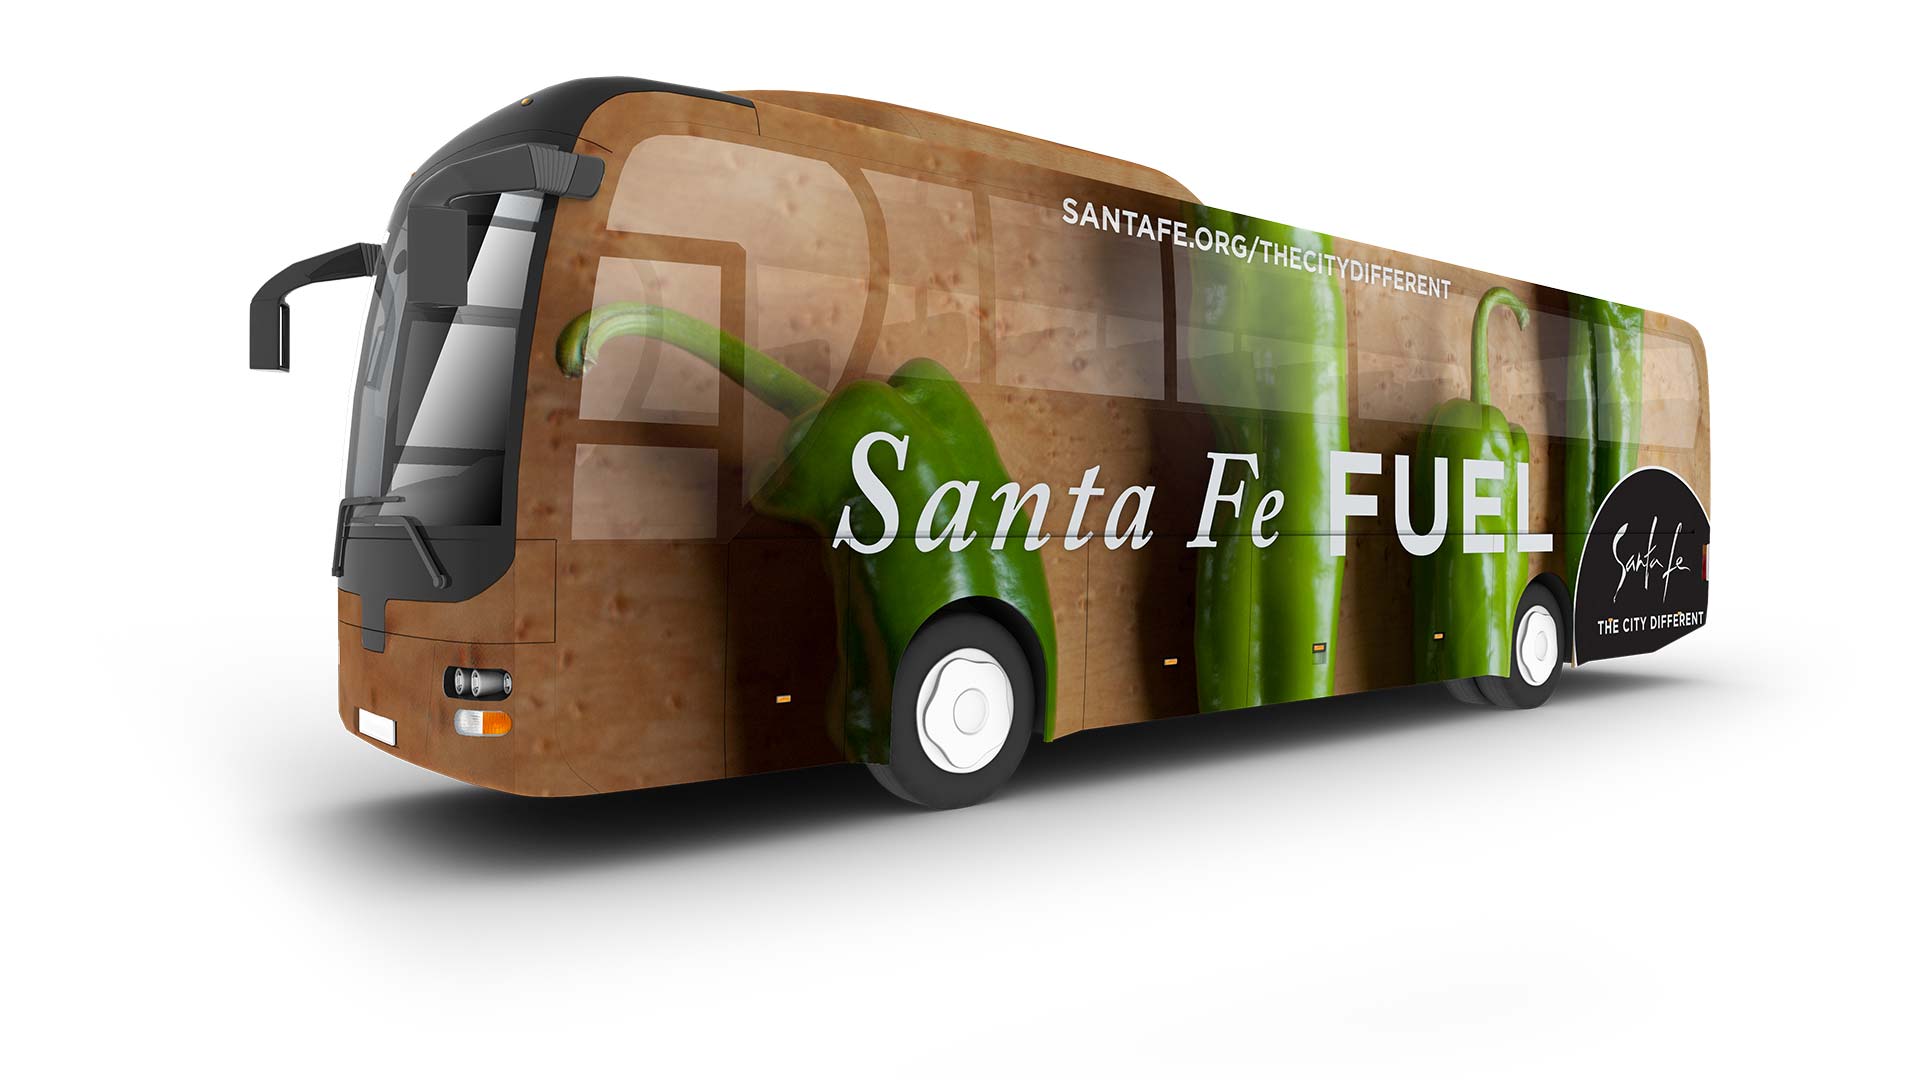 Bus wrap ad: Santa Fe Fuel